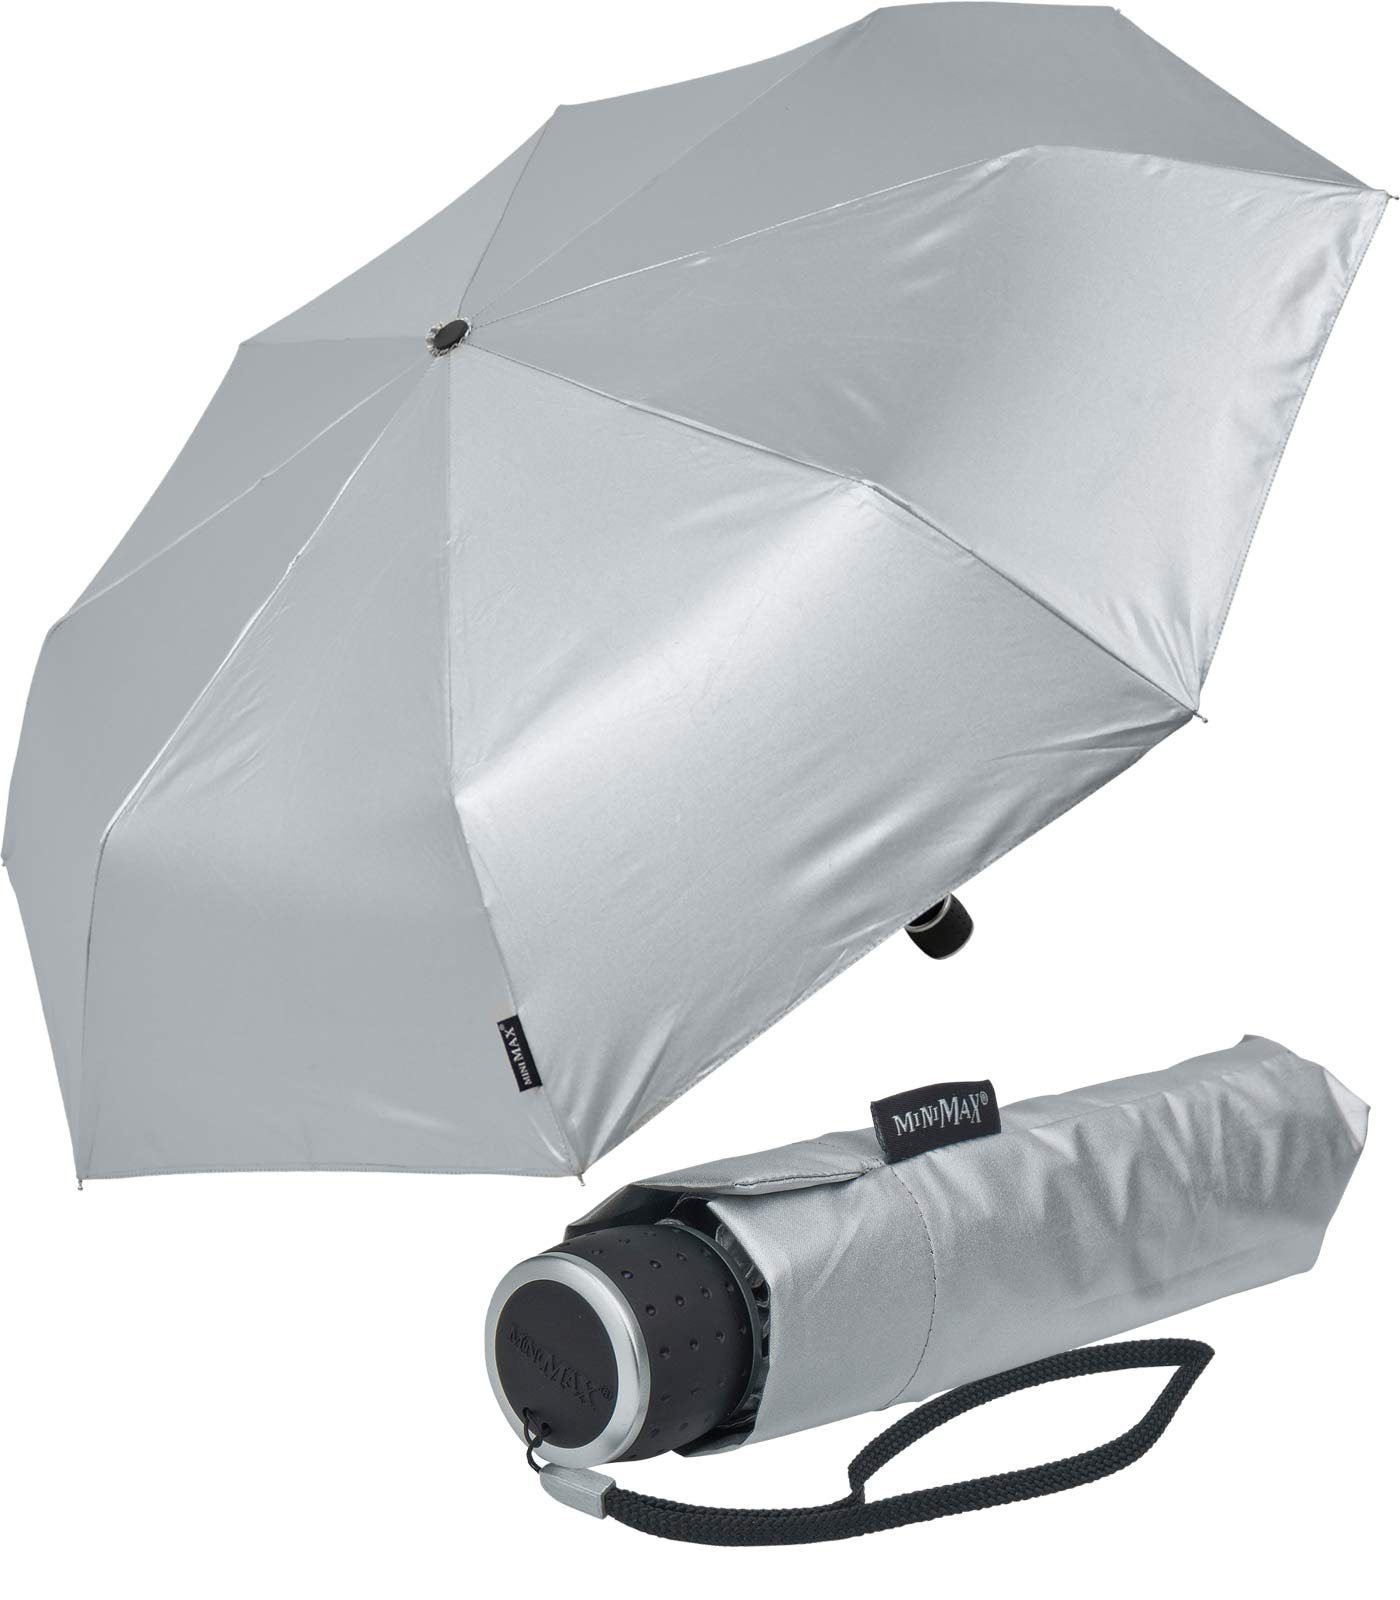 Impliva Taschenregenschirm jjede miniMAX® silber Handöffner, Tasche leichter Schirm kleiner passt in